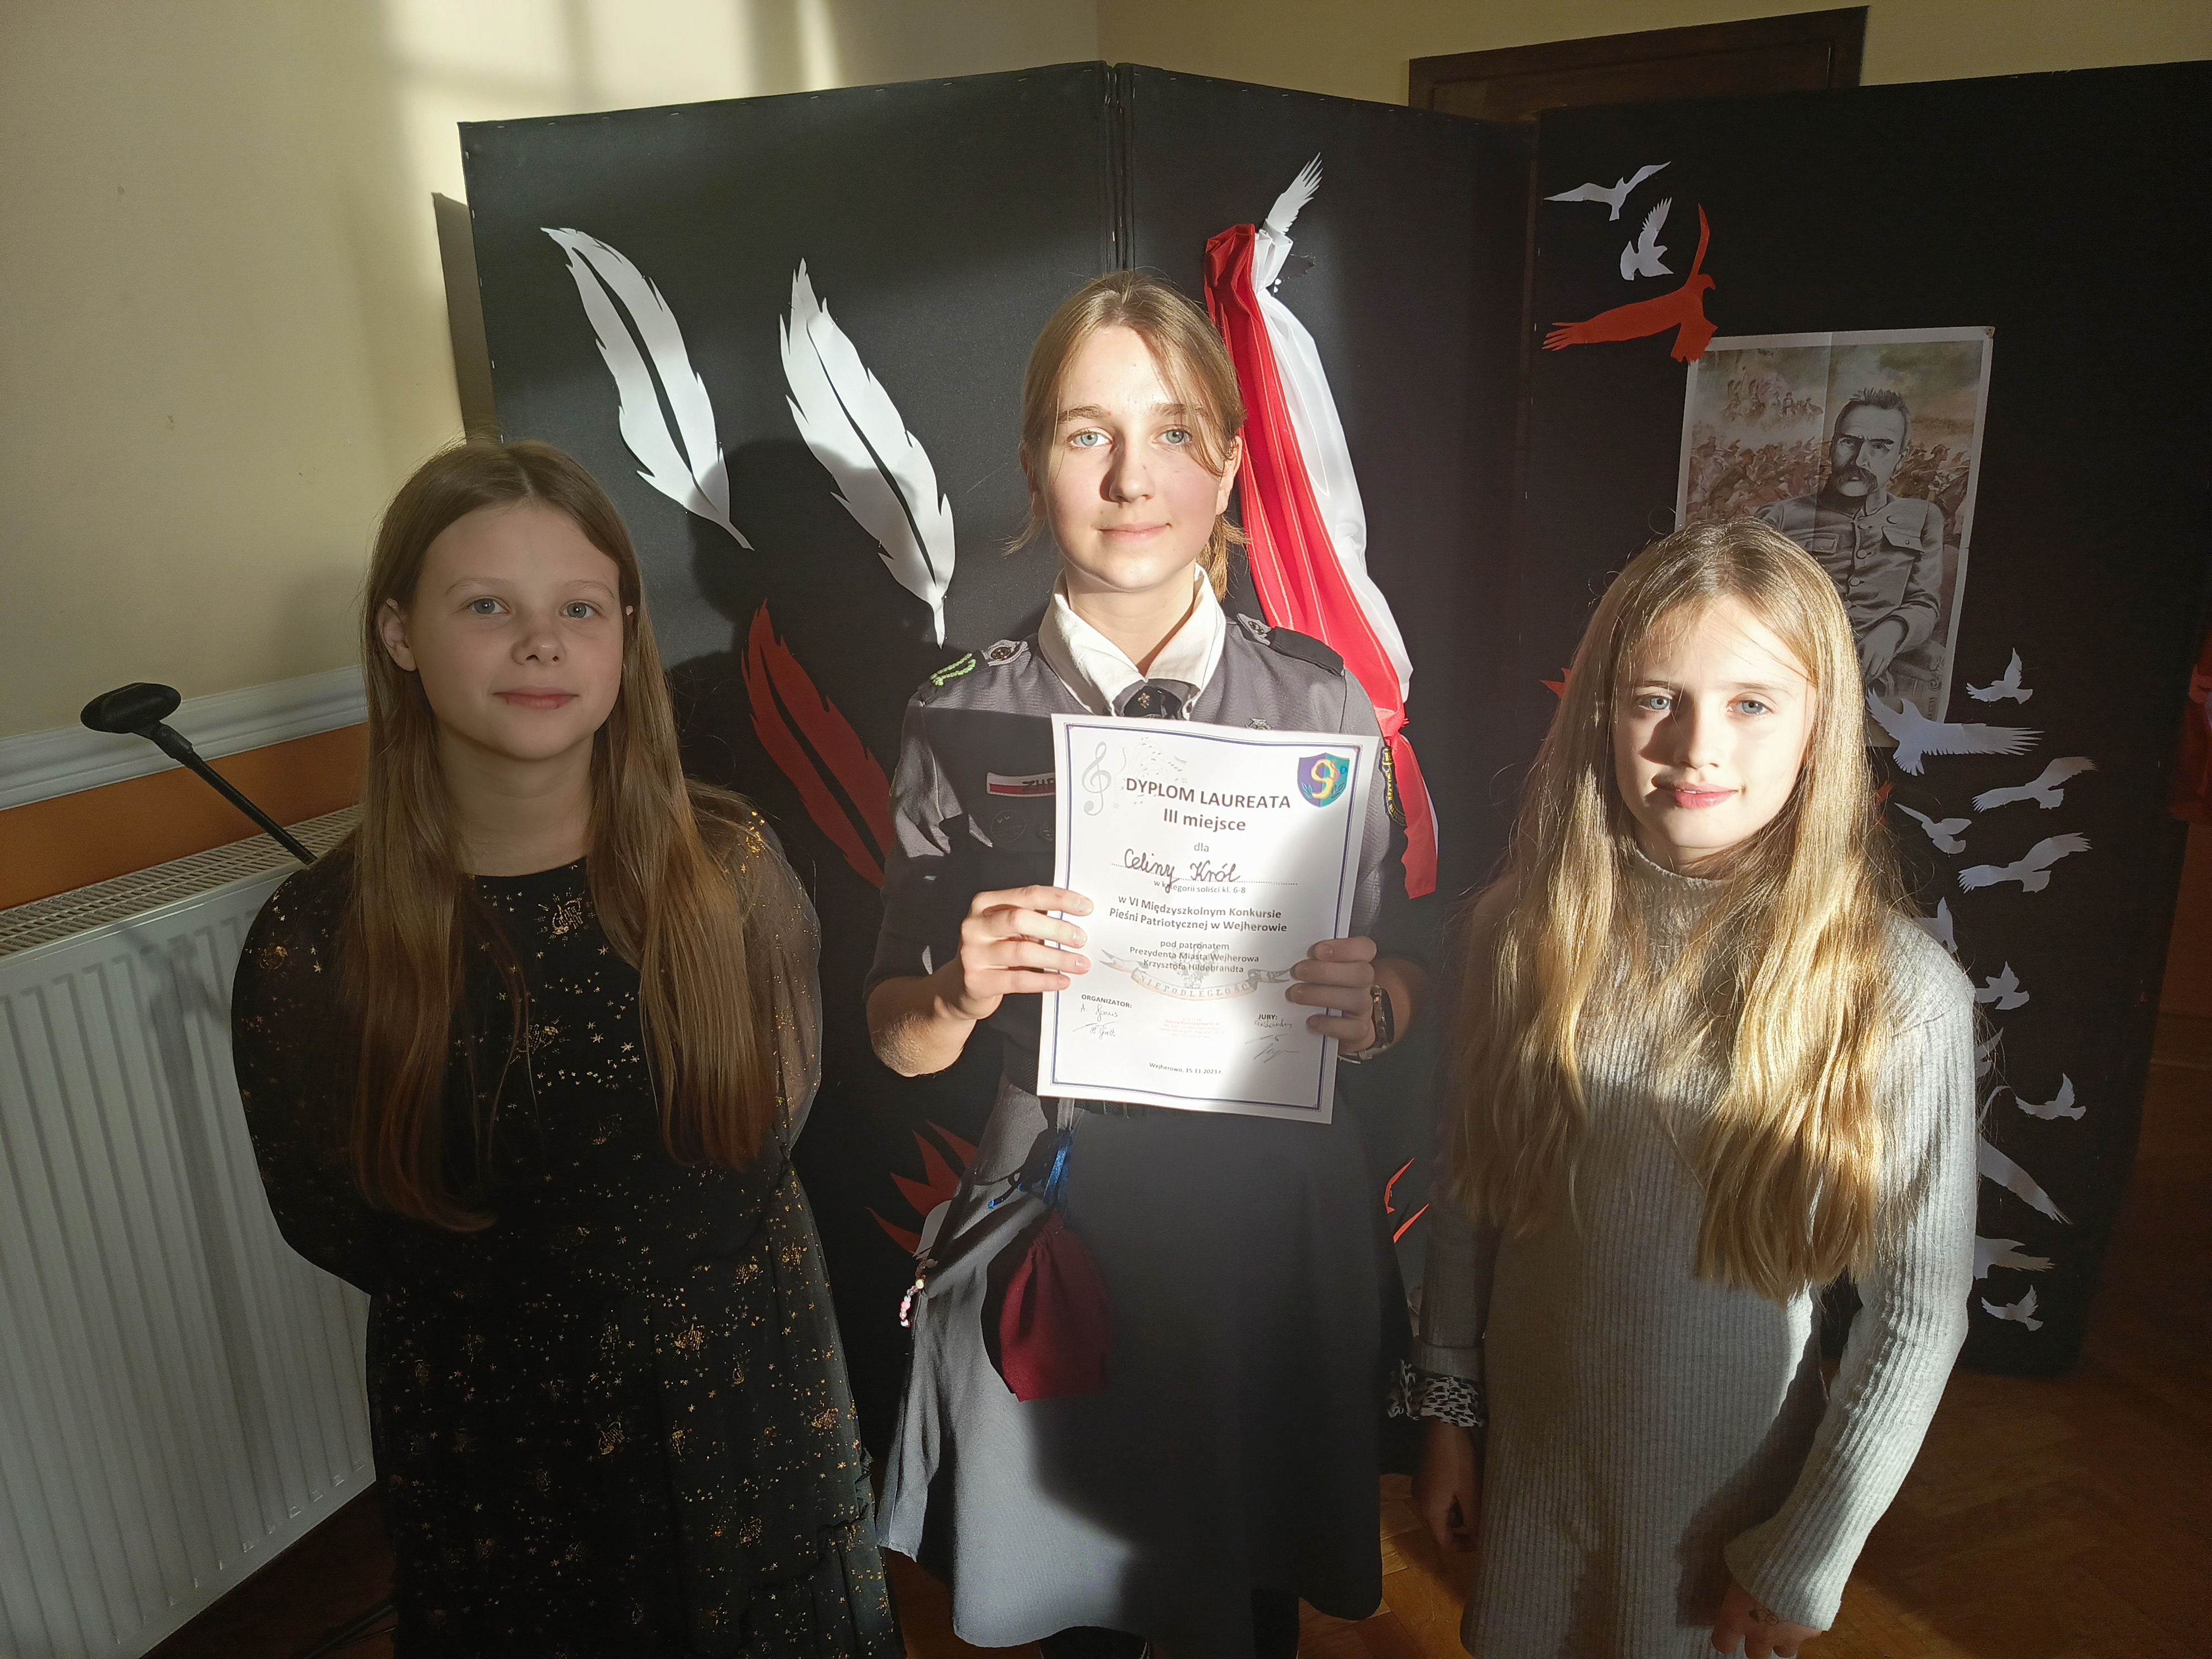 Na zdjęciu trzy dziewczynki, jedna z nich trzyma dyplom. W tle granatowa tablica na niej polska flaga i wydruk  zdjęcia Marszałka Piłsudskiego